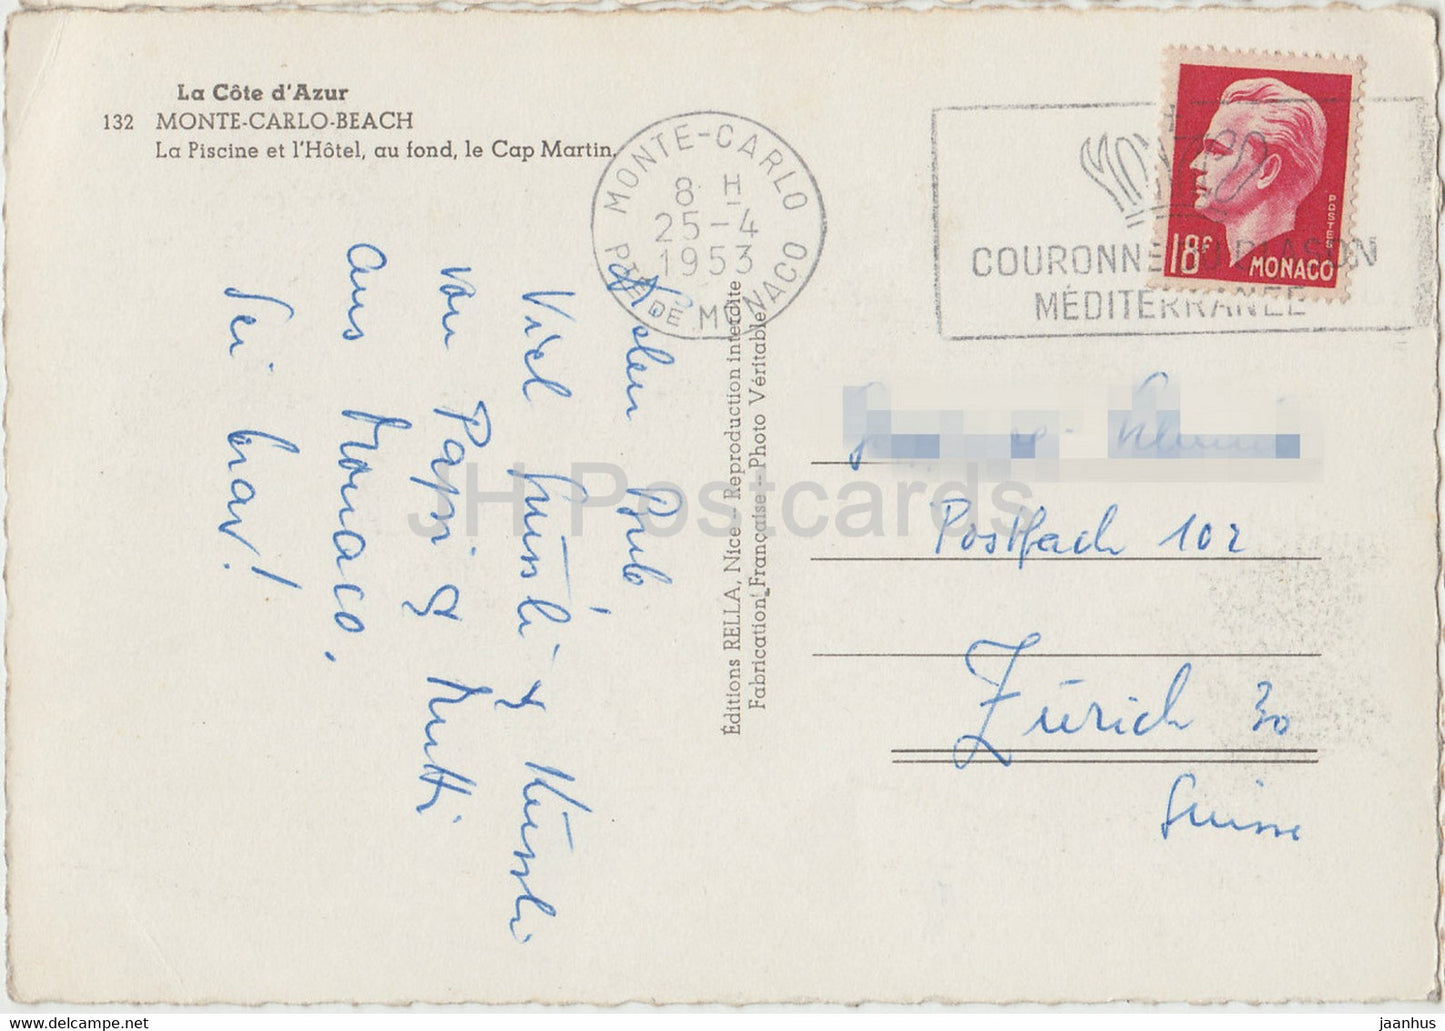 Monte Carlo Beach - La Piscine et l'Hotel au fond . Le Cap Martin - old postcard - 1953 - Monaco - used